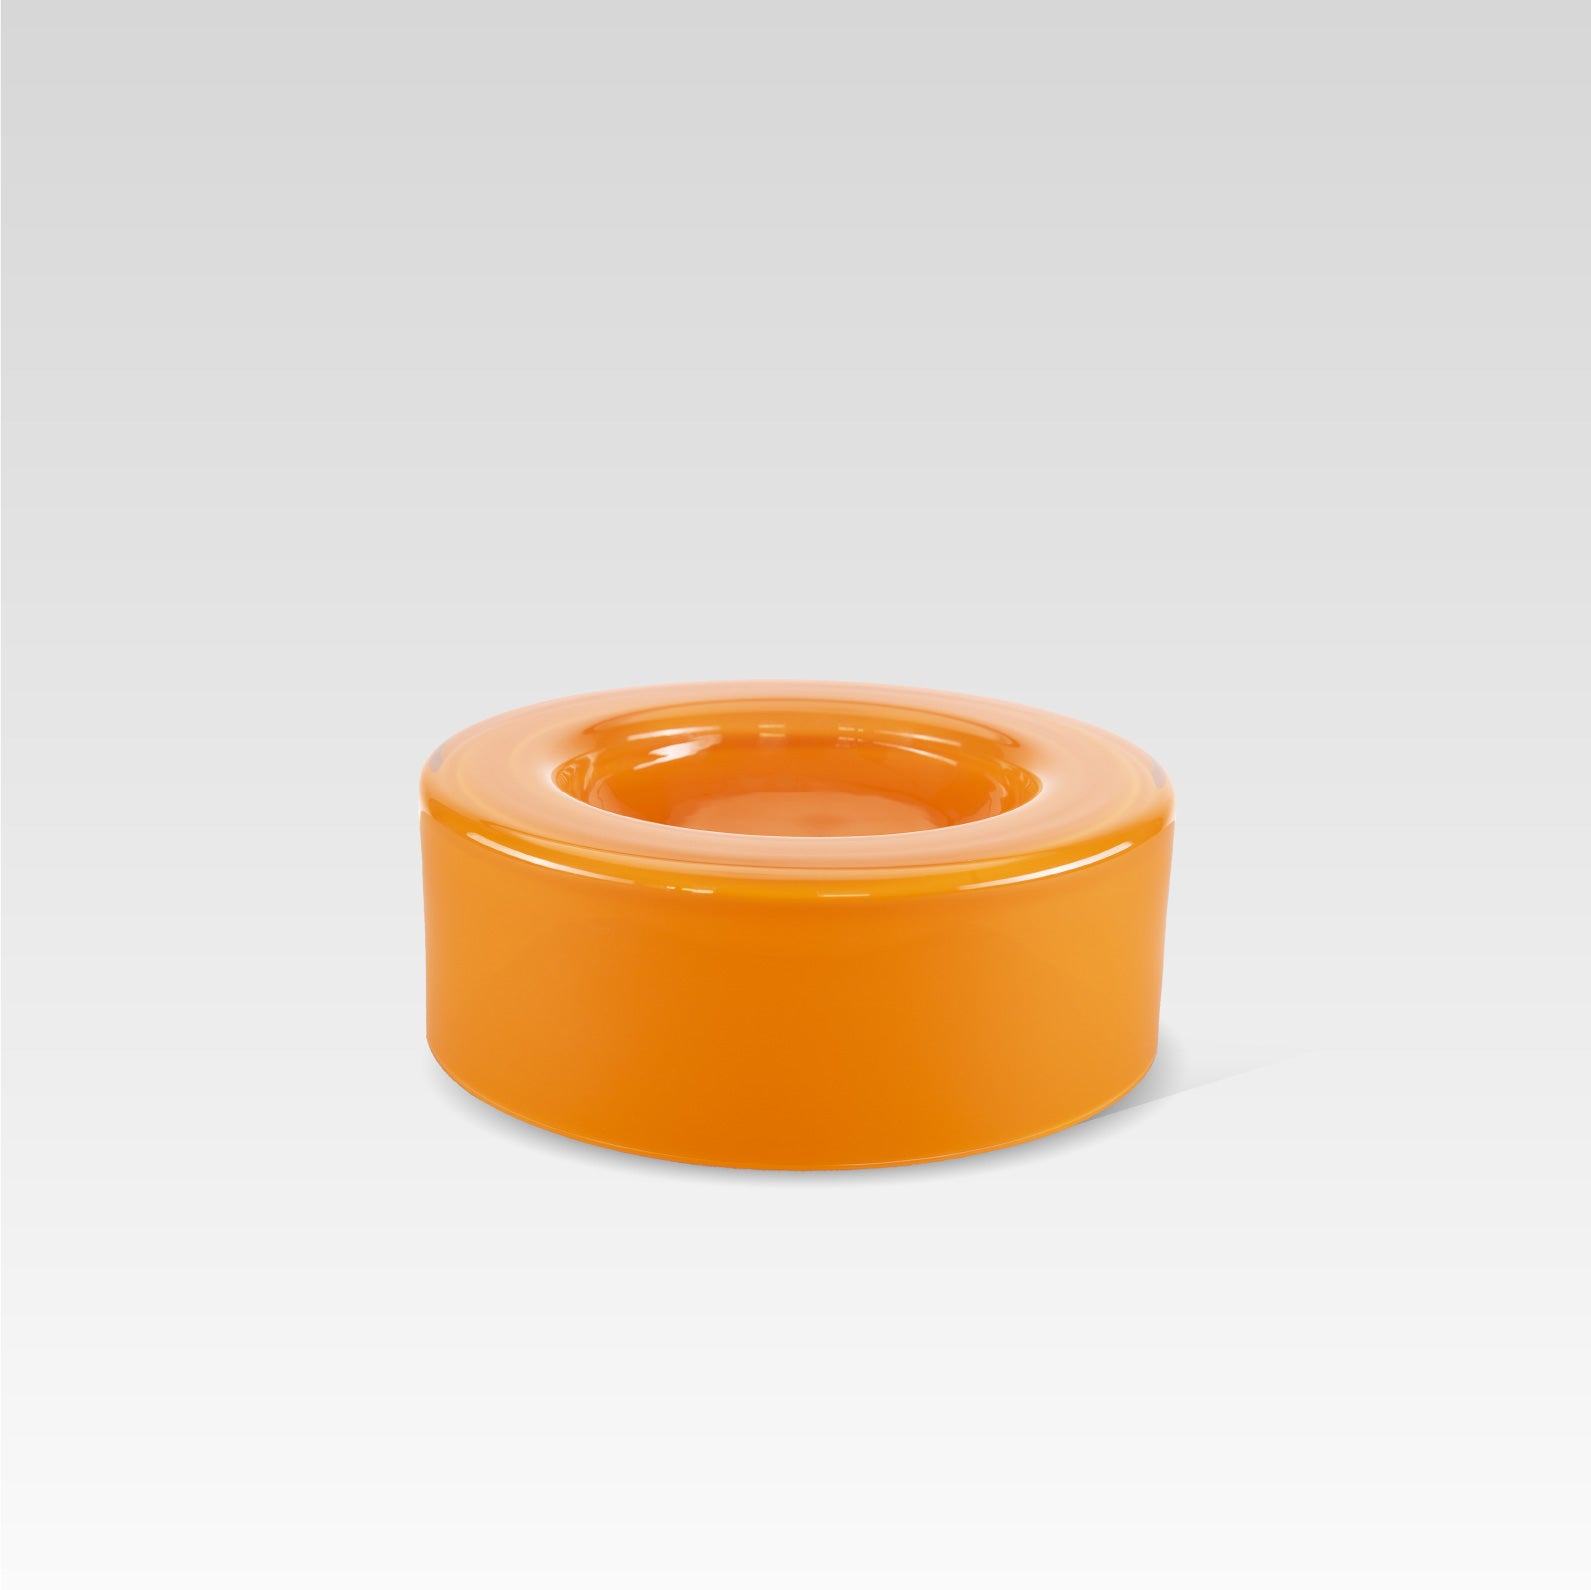 WET Bowl - Medium Orange